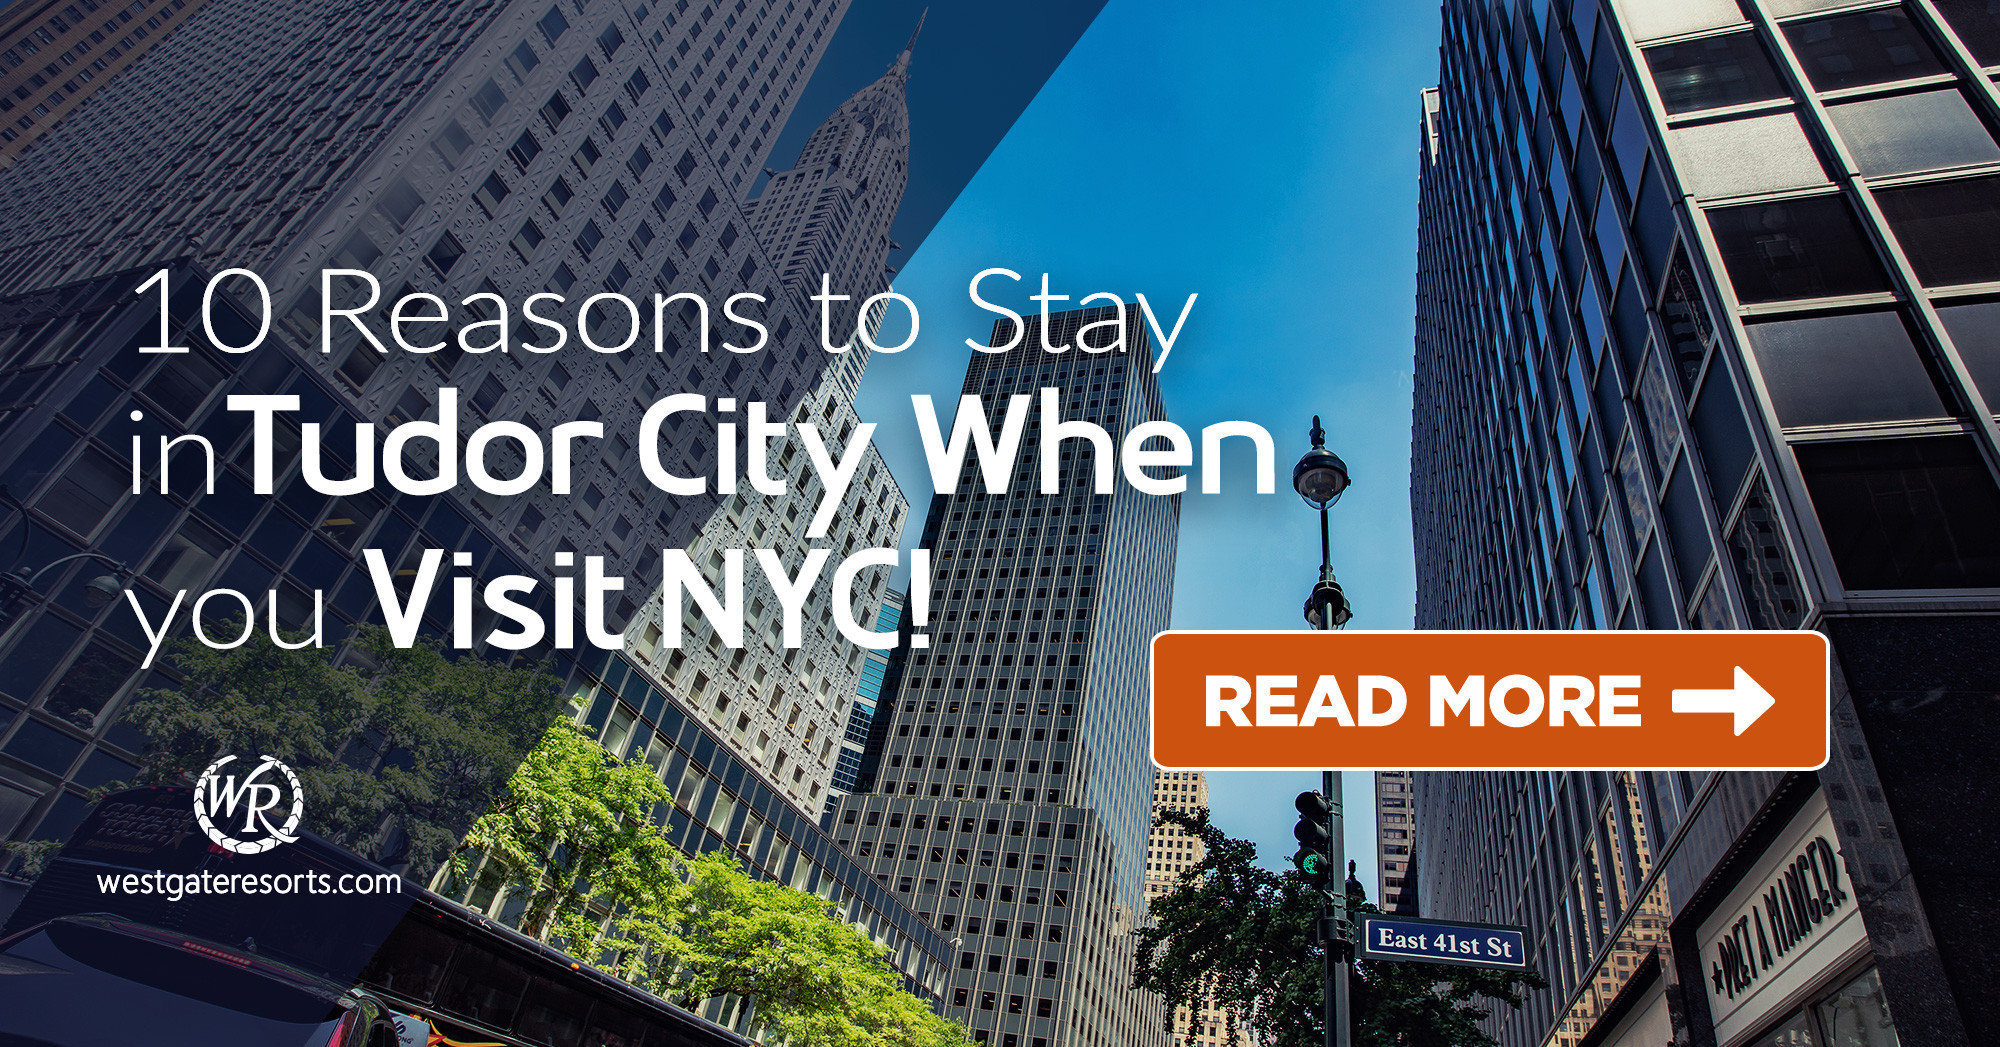 ¡10 razones para quedarse en Tudor City cuando visite Nueva York!